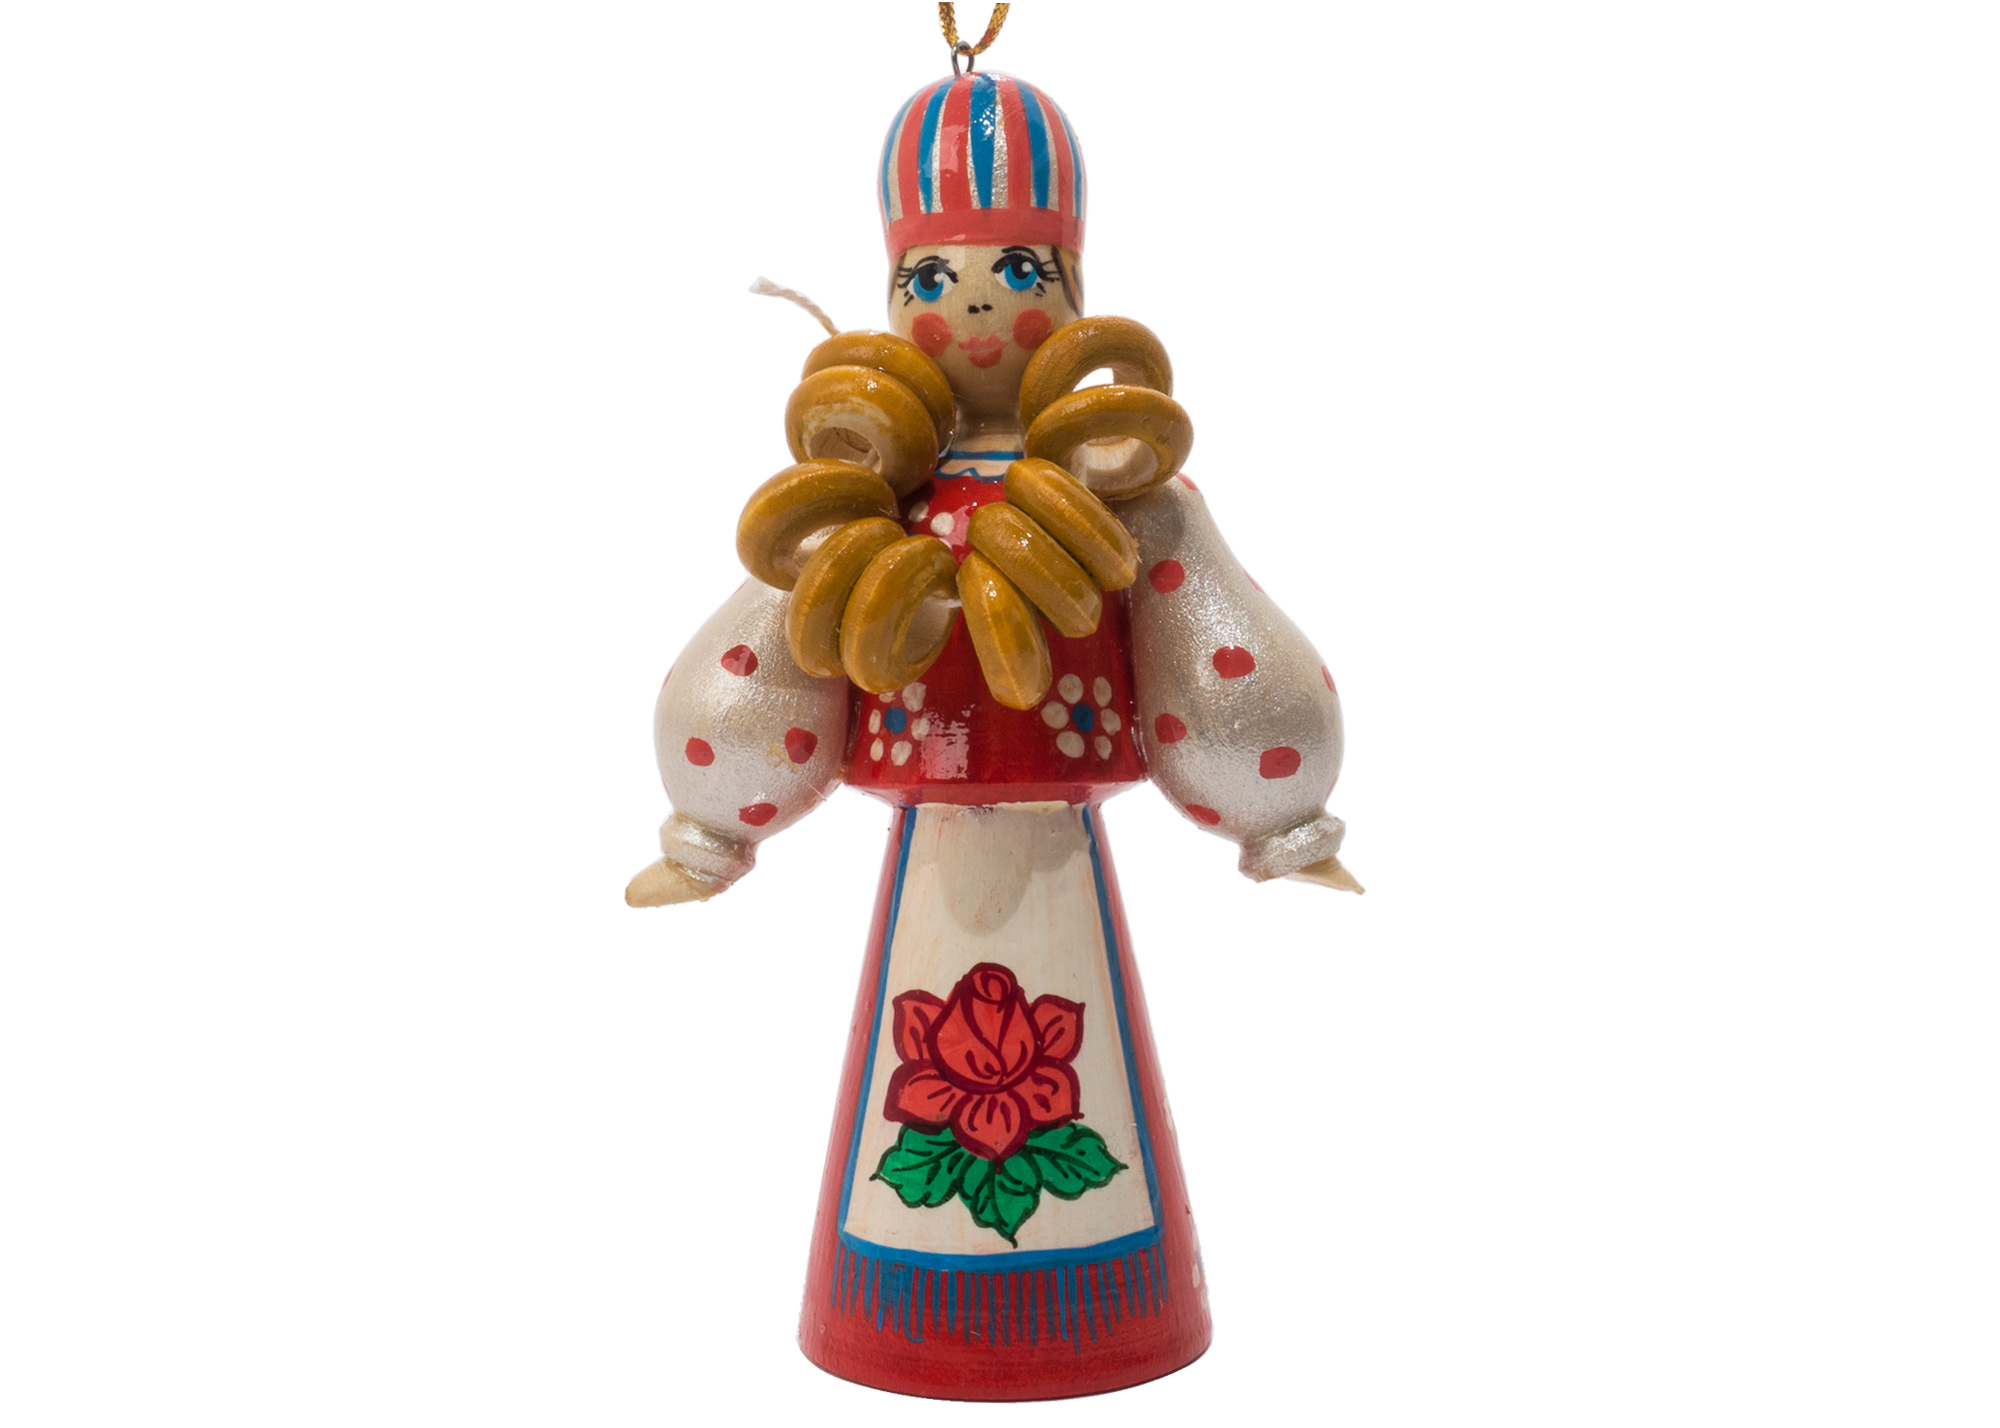 Buy Russian Folk Bagel Vendor Ornament 4.25" at GoldenCockerel.com